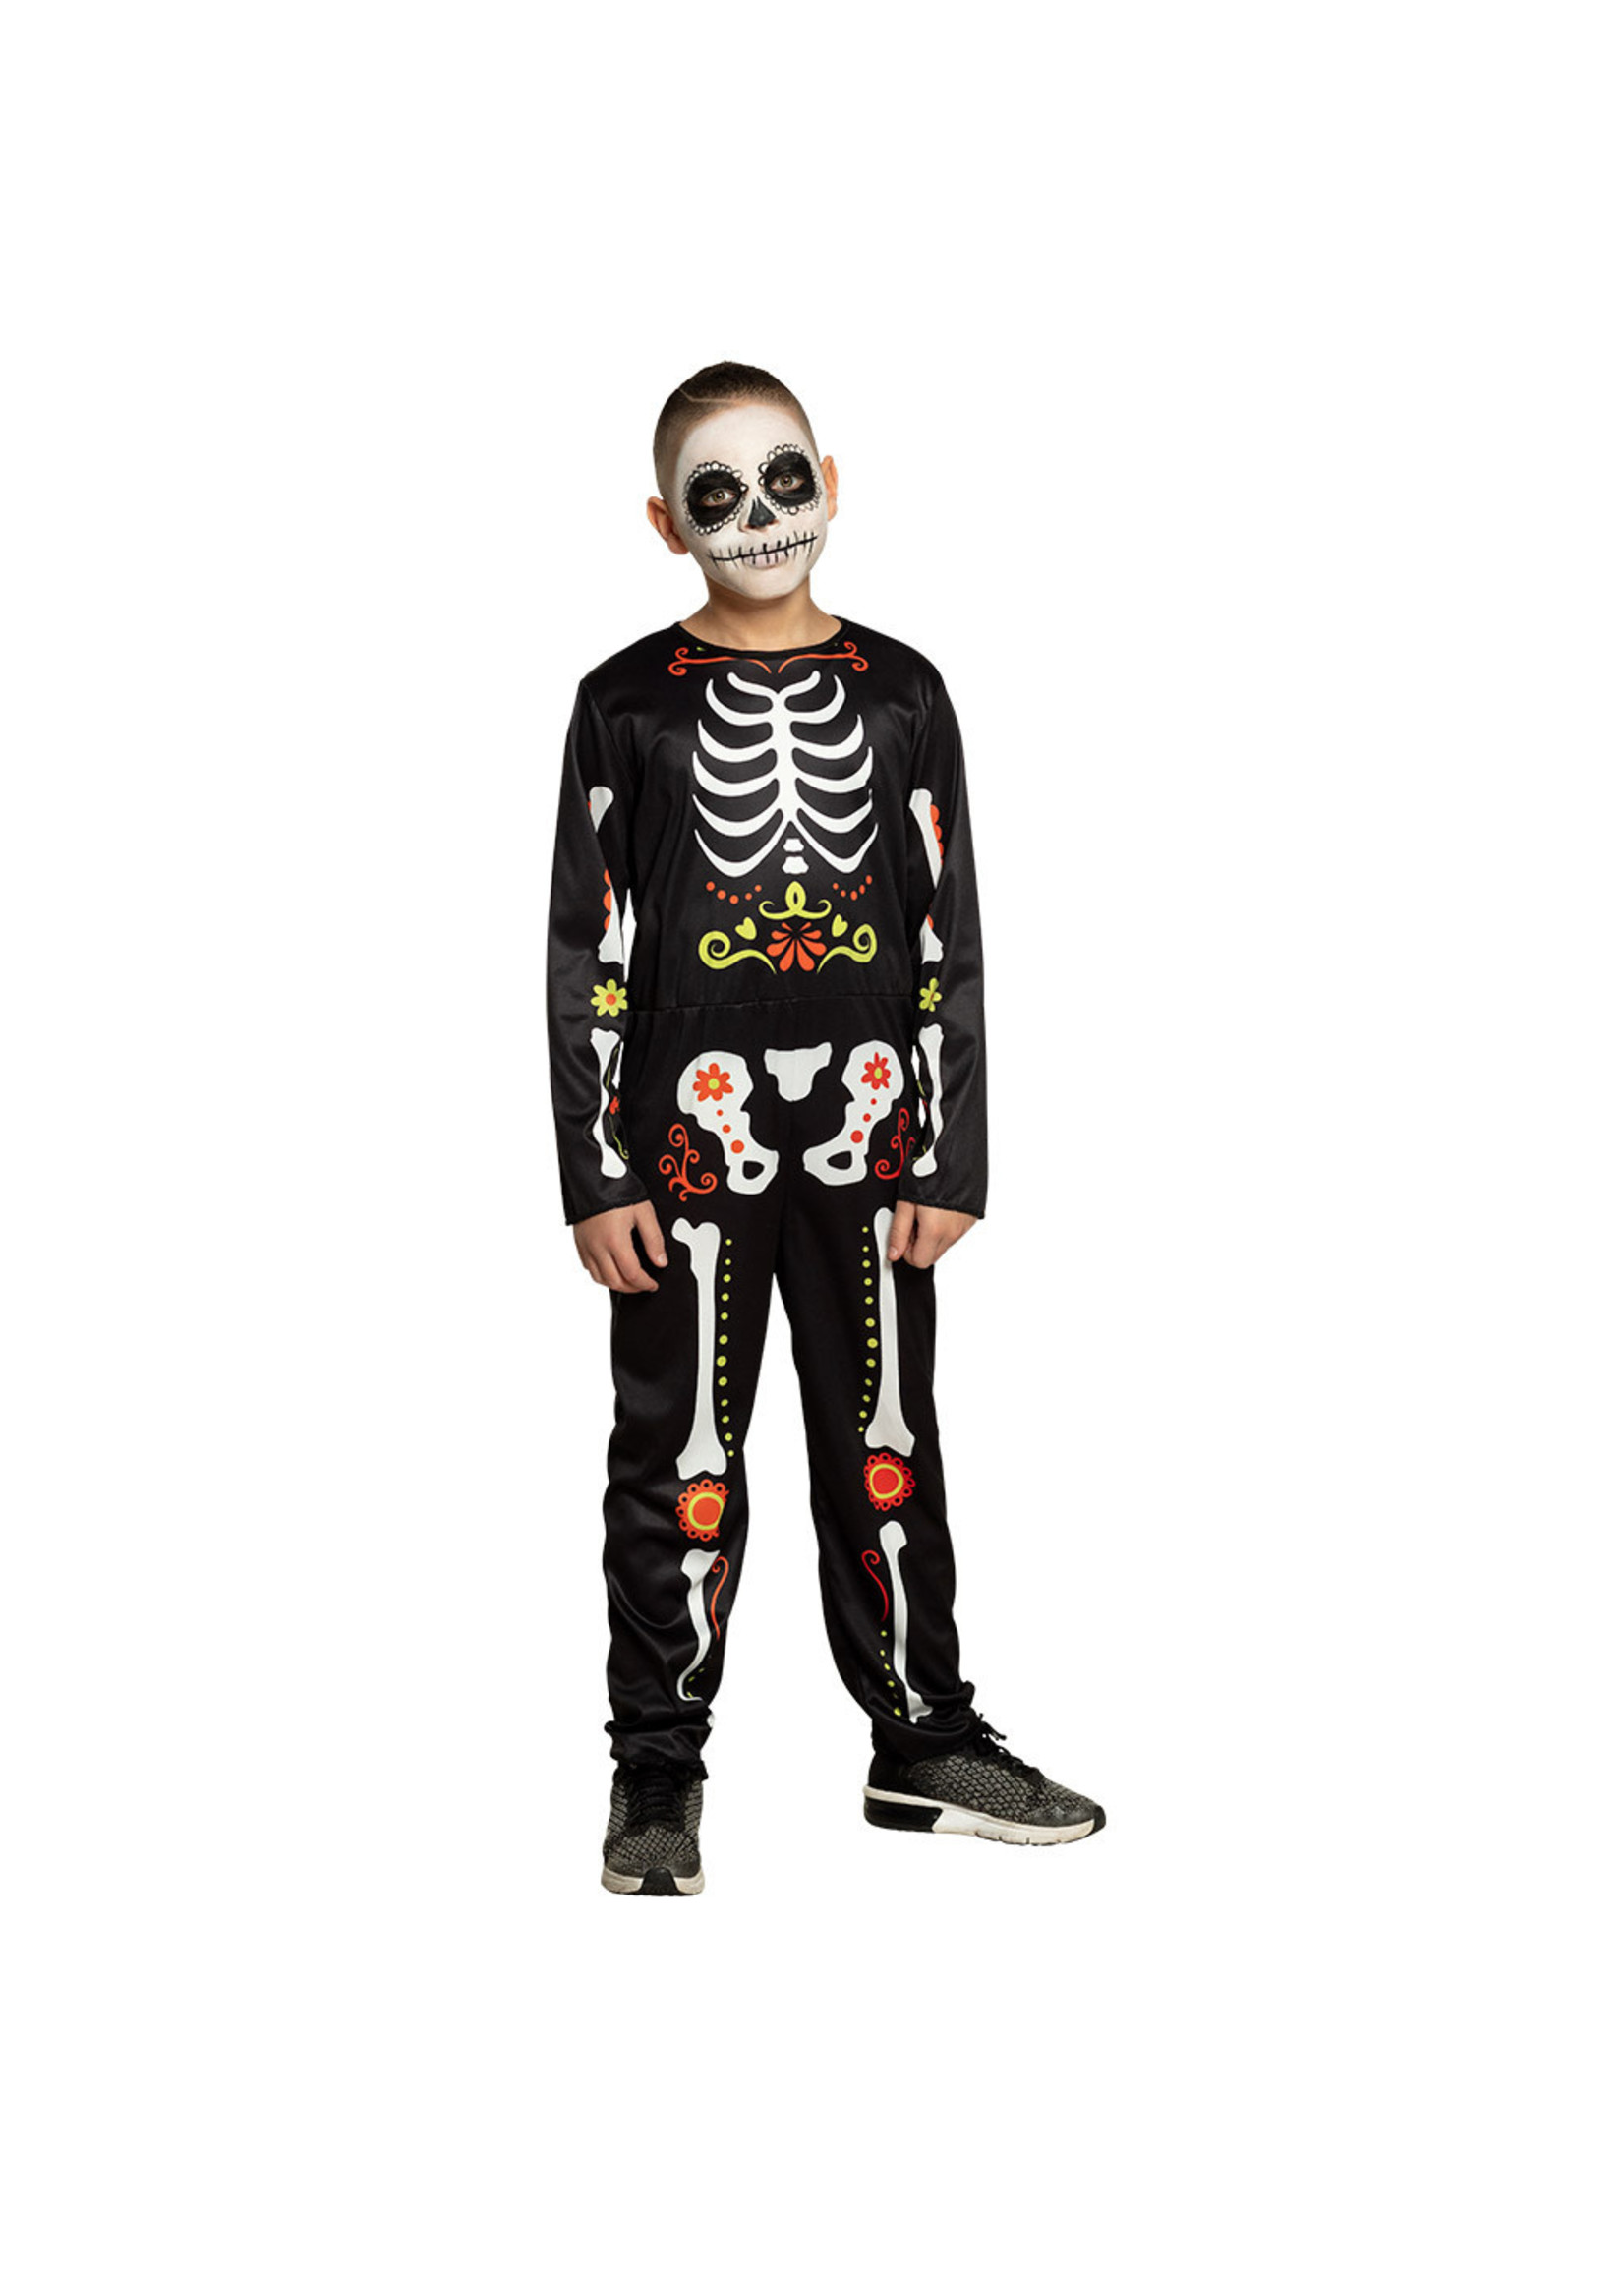 Feestkleding Breda Kinder kostuum skelet met kleuren